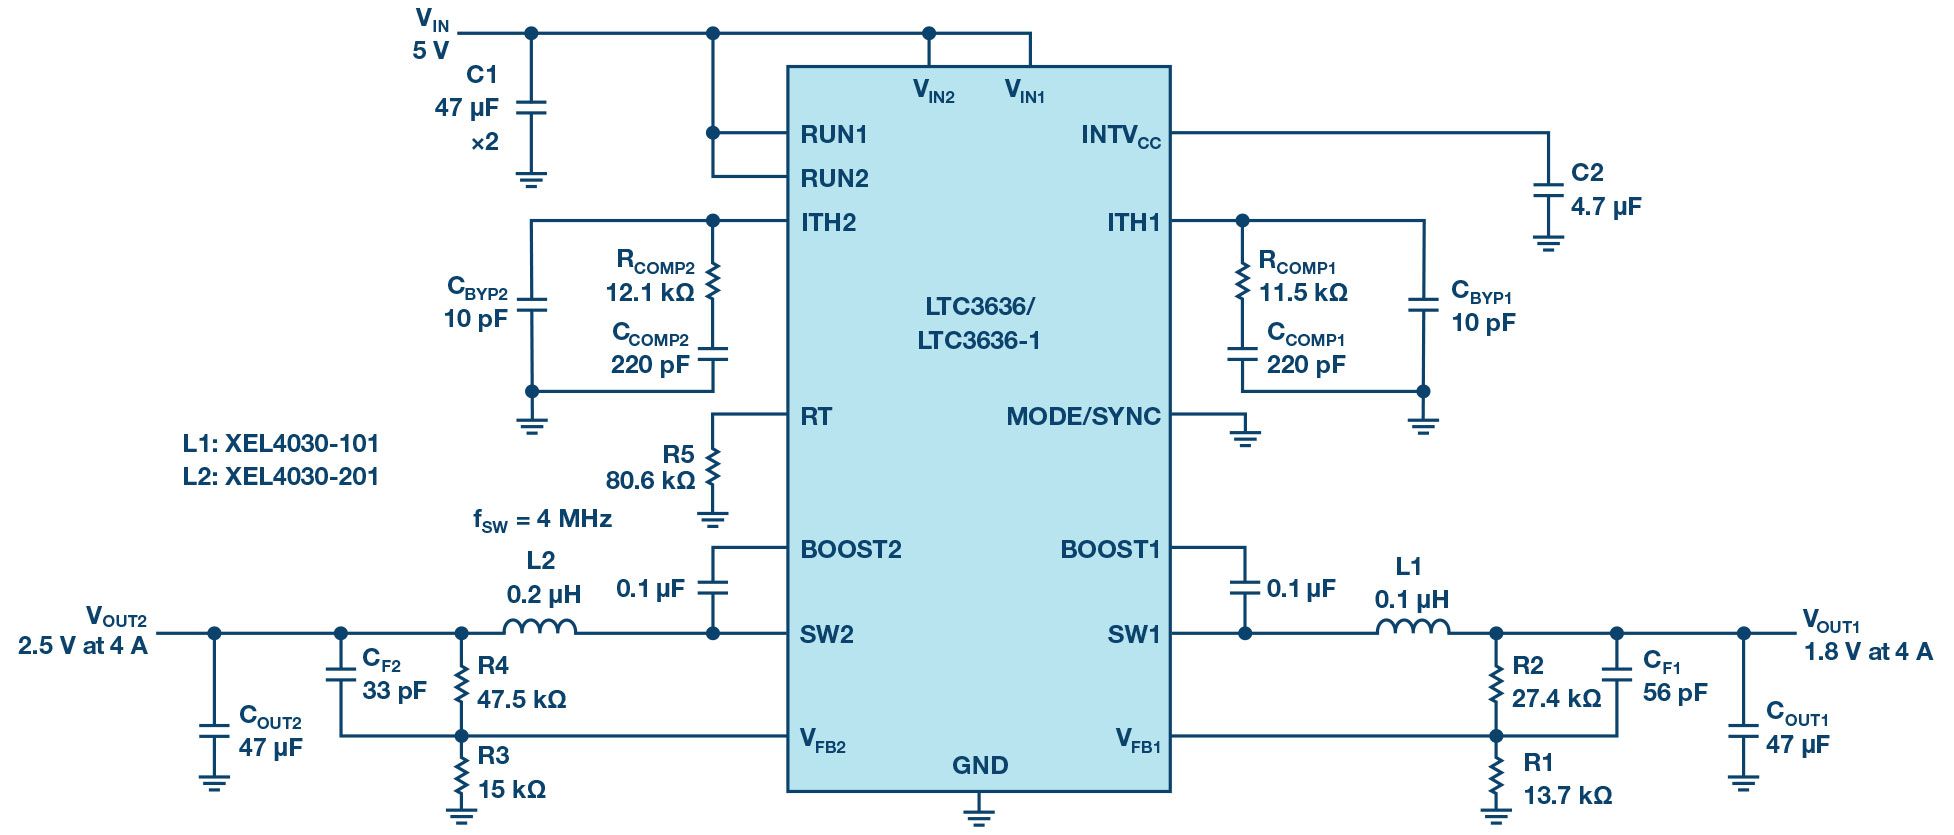 双通道、6A降压稳压器提供高效紧凑的解决方案